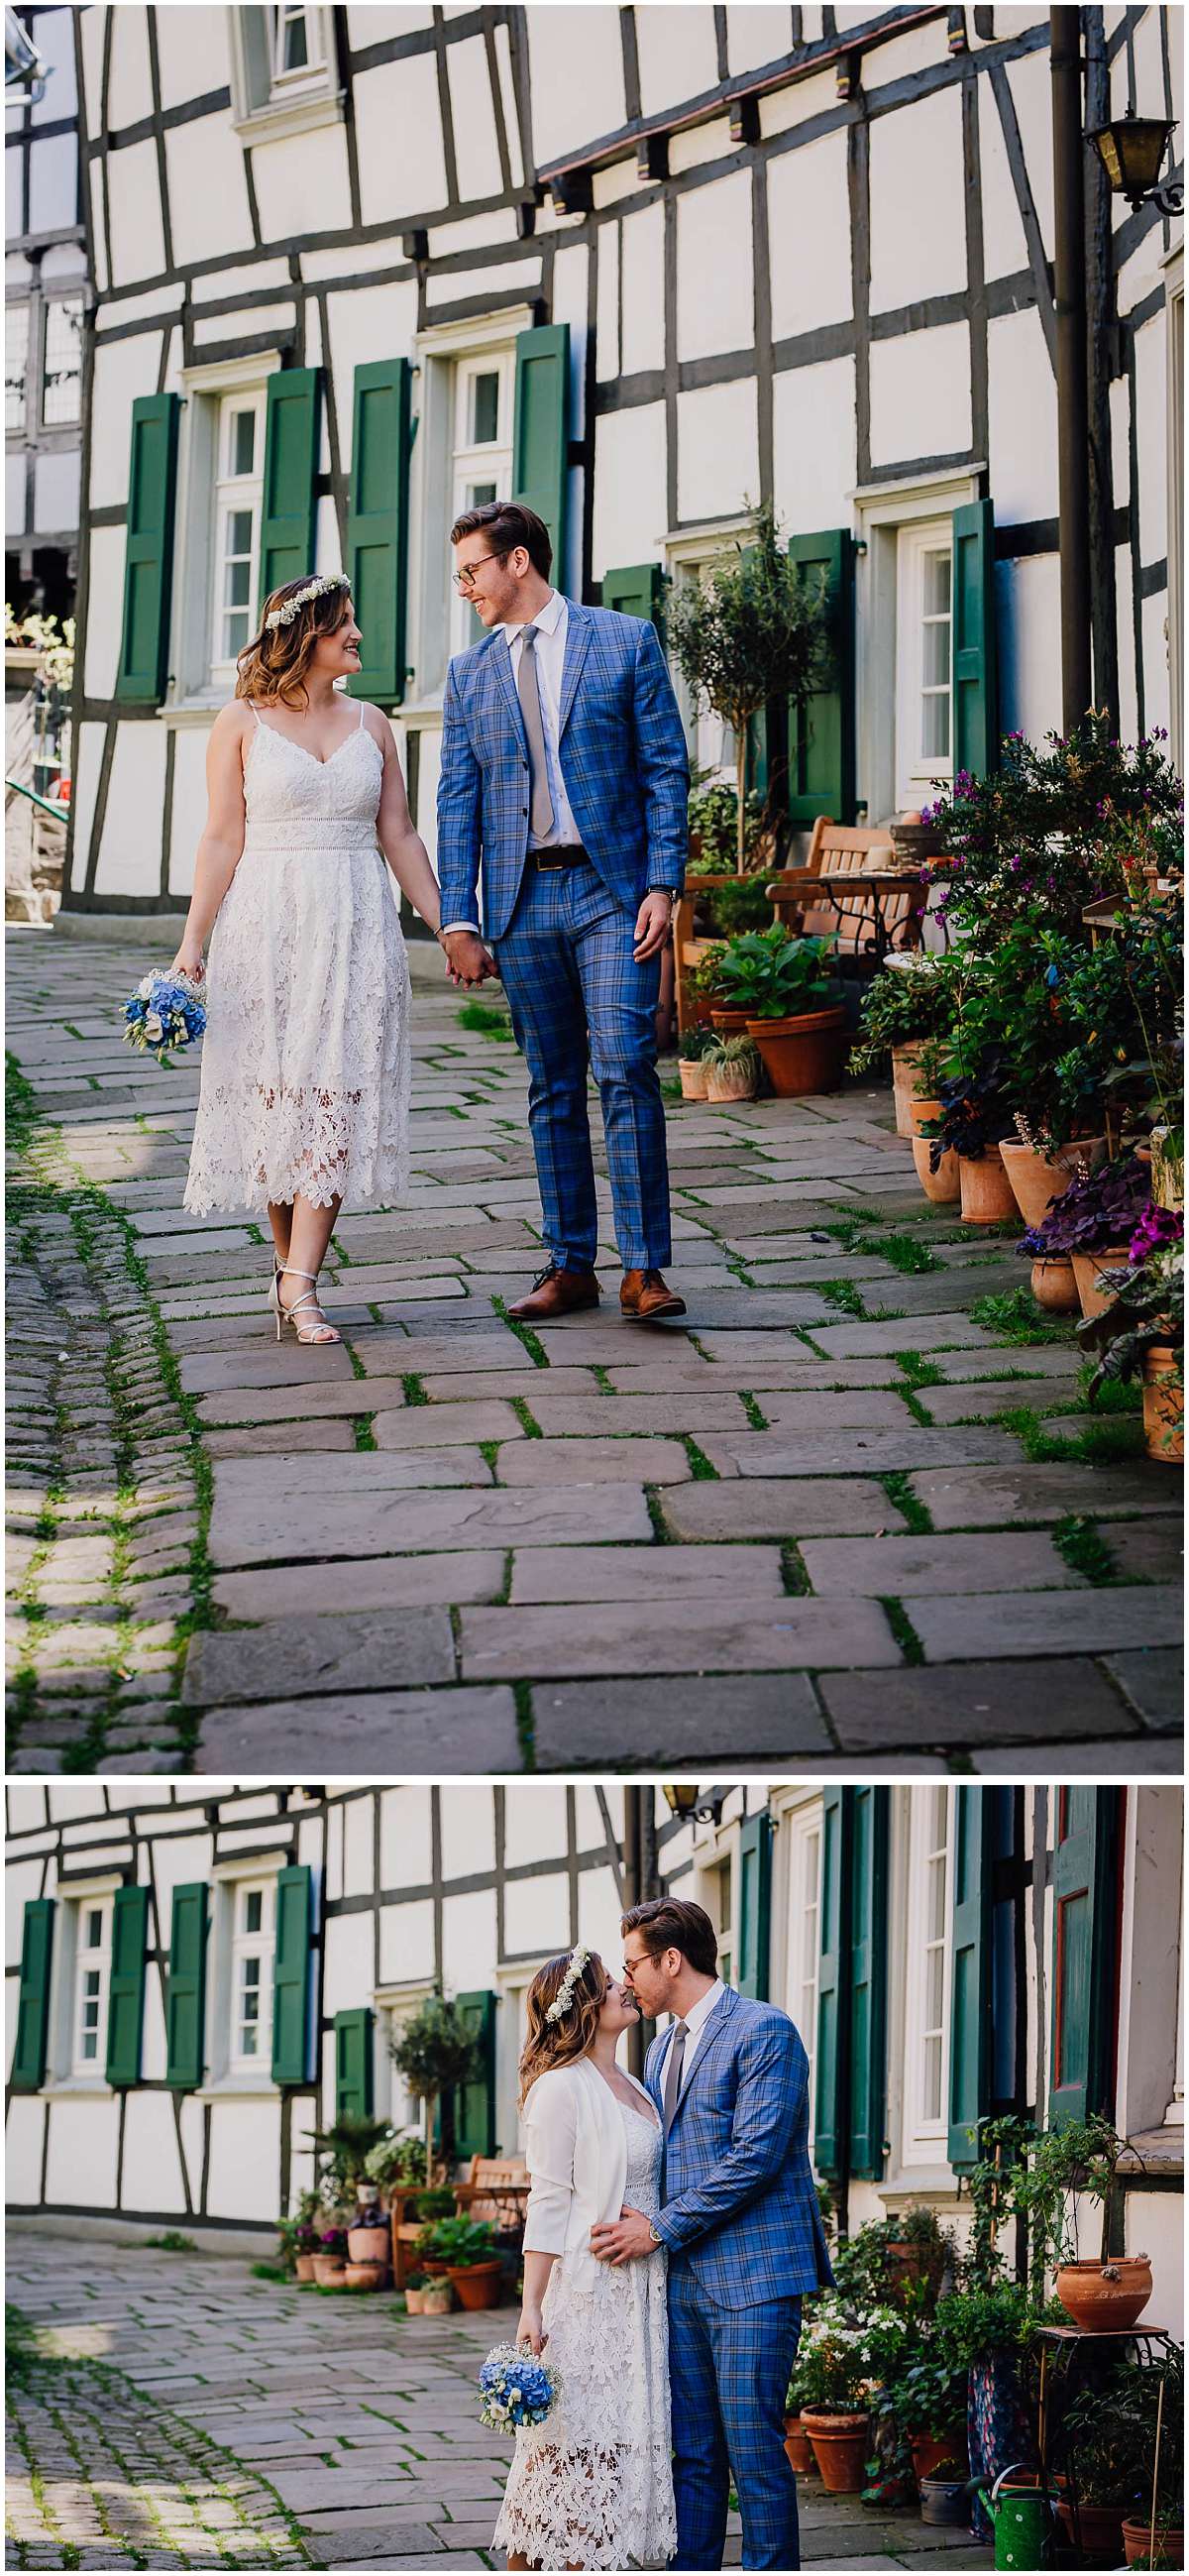 Hochzeitsfotos in Hattingen in der Altstadt zwischen Fachwerkhäusern